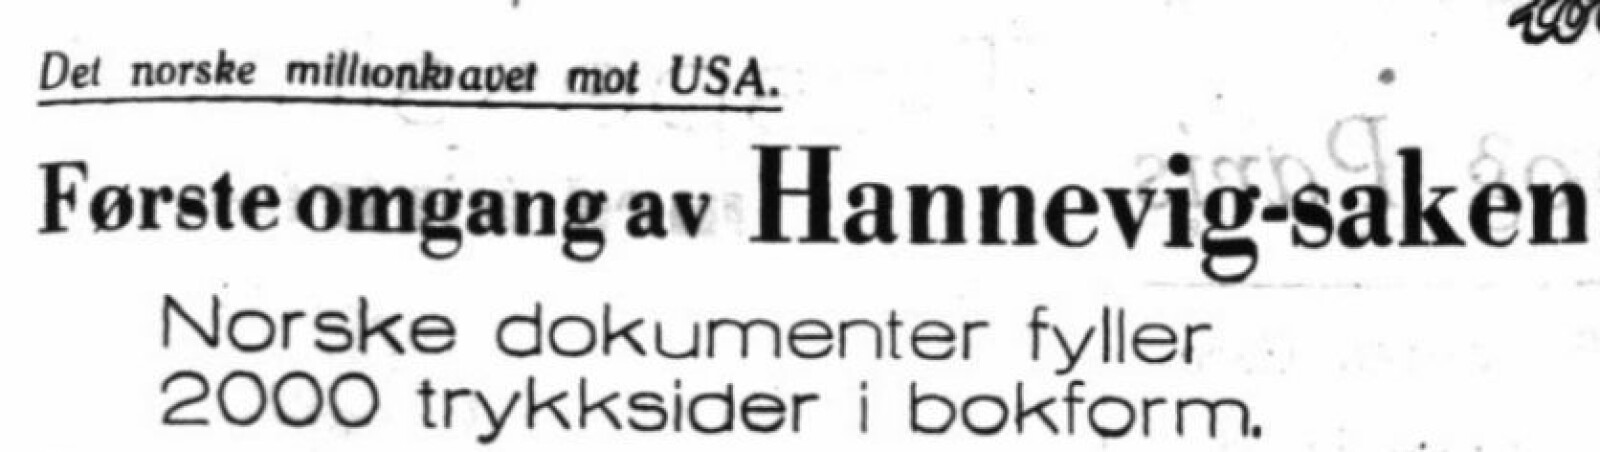 <b>FAKSIMILE:</b> Overskrift i VG fra 1949. Da hadde Hannevig vært konkurs i 30 år.